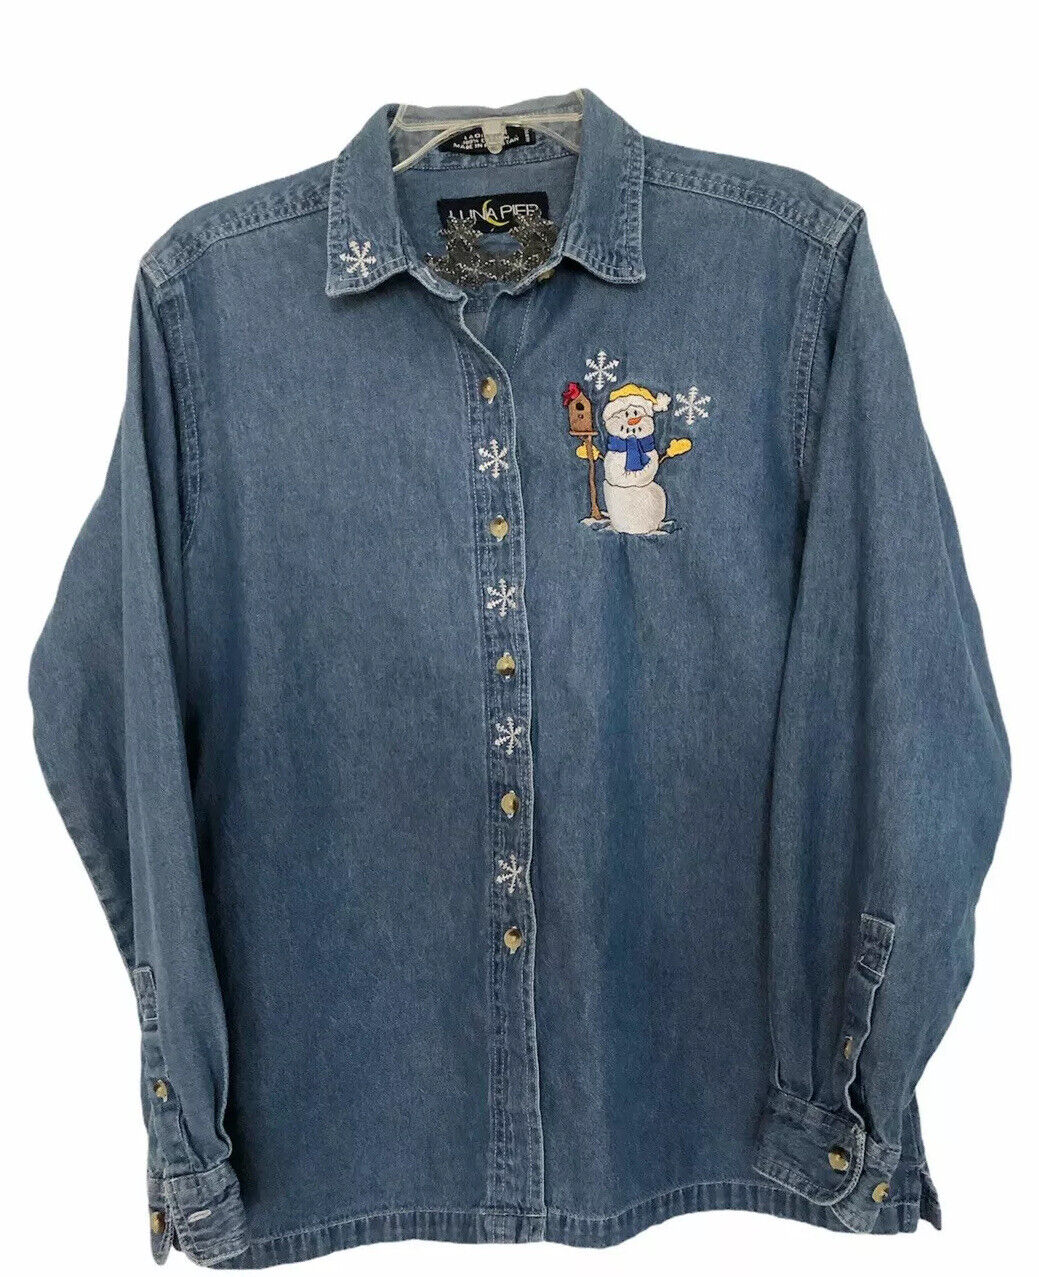 Read more about the article Vintage Christmas Luna Pier Blue Denim Snowflake Applique Shirt Women’s M